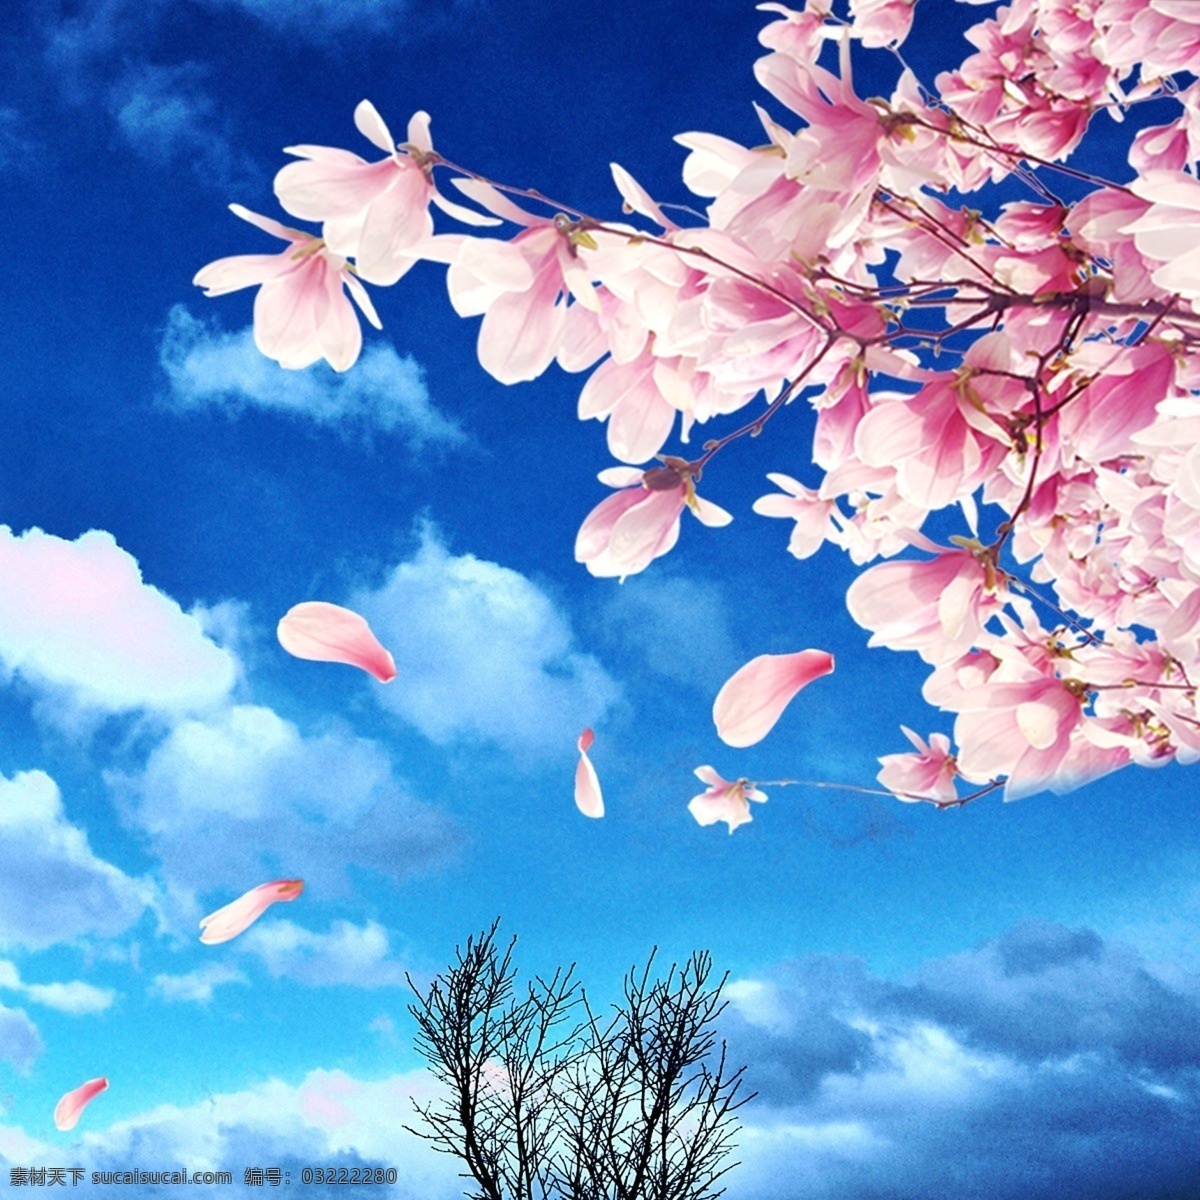 蓝天 白云 花朵 花瓣 树 蓝天白云元素 粉色花朵 树木 飘落的花瓣